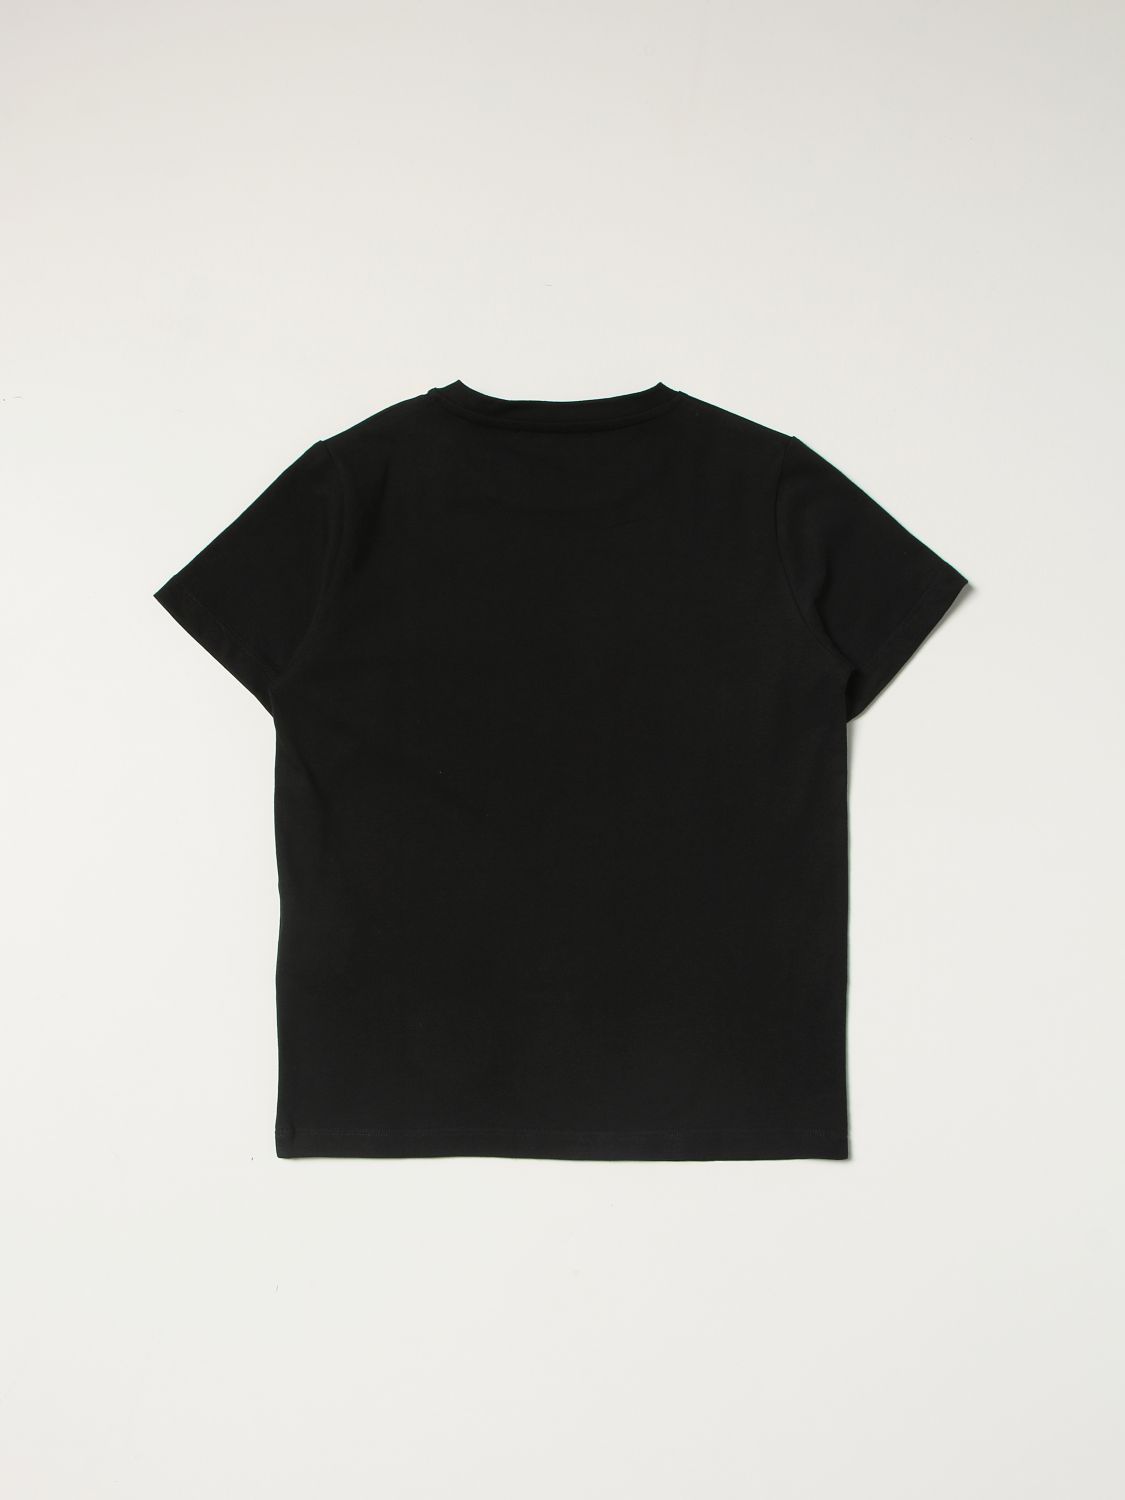 Tシャツ ヤングヴェルサーチェ: Tシャツ Young Versace 男の子 ブラック 2